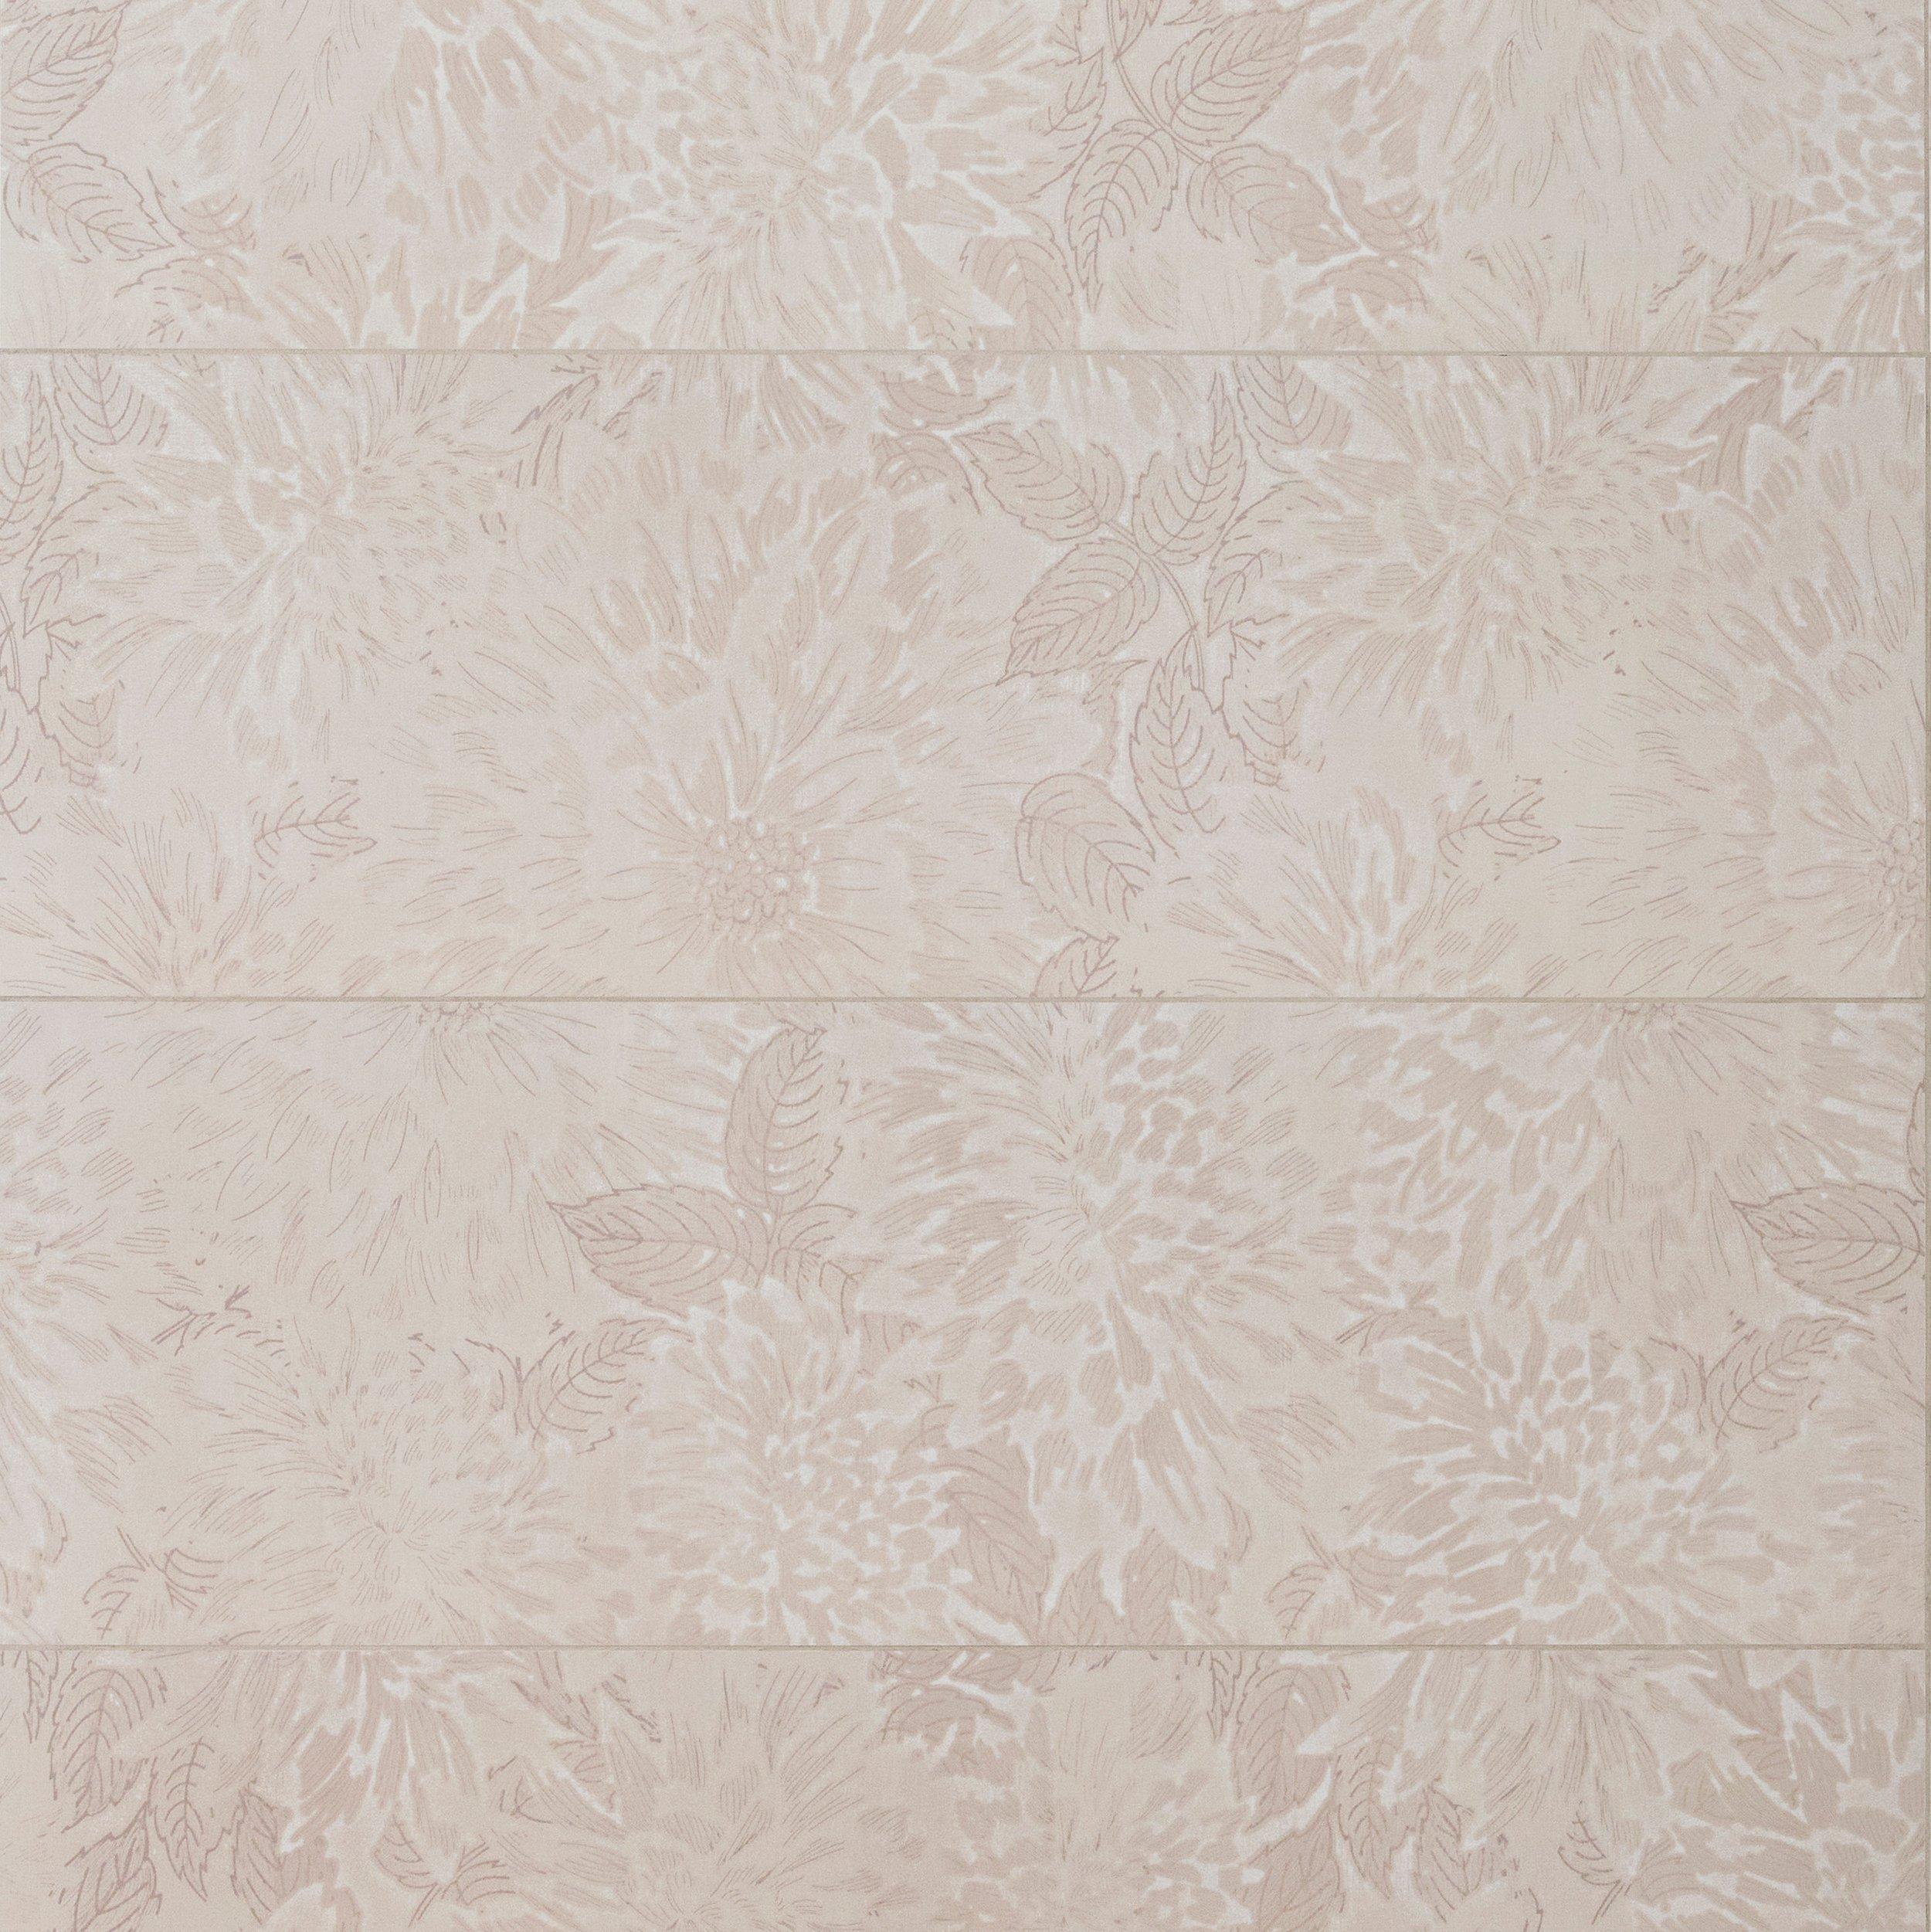 Lotus Lino Wall Tile